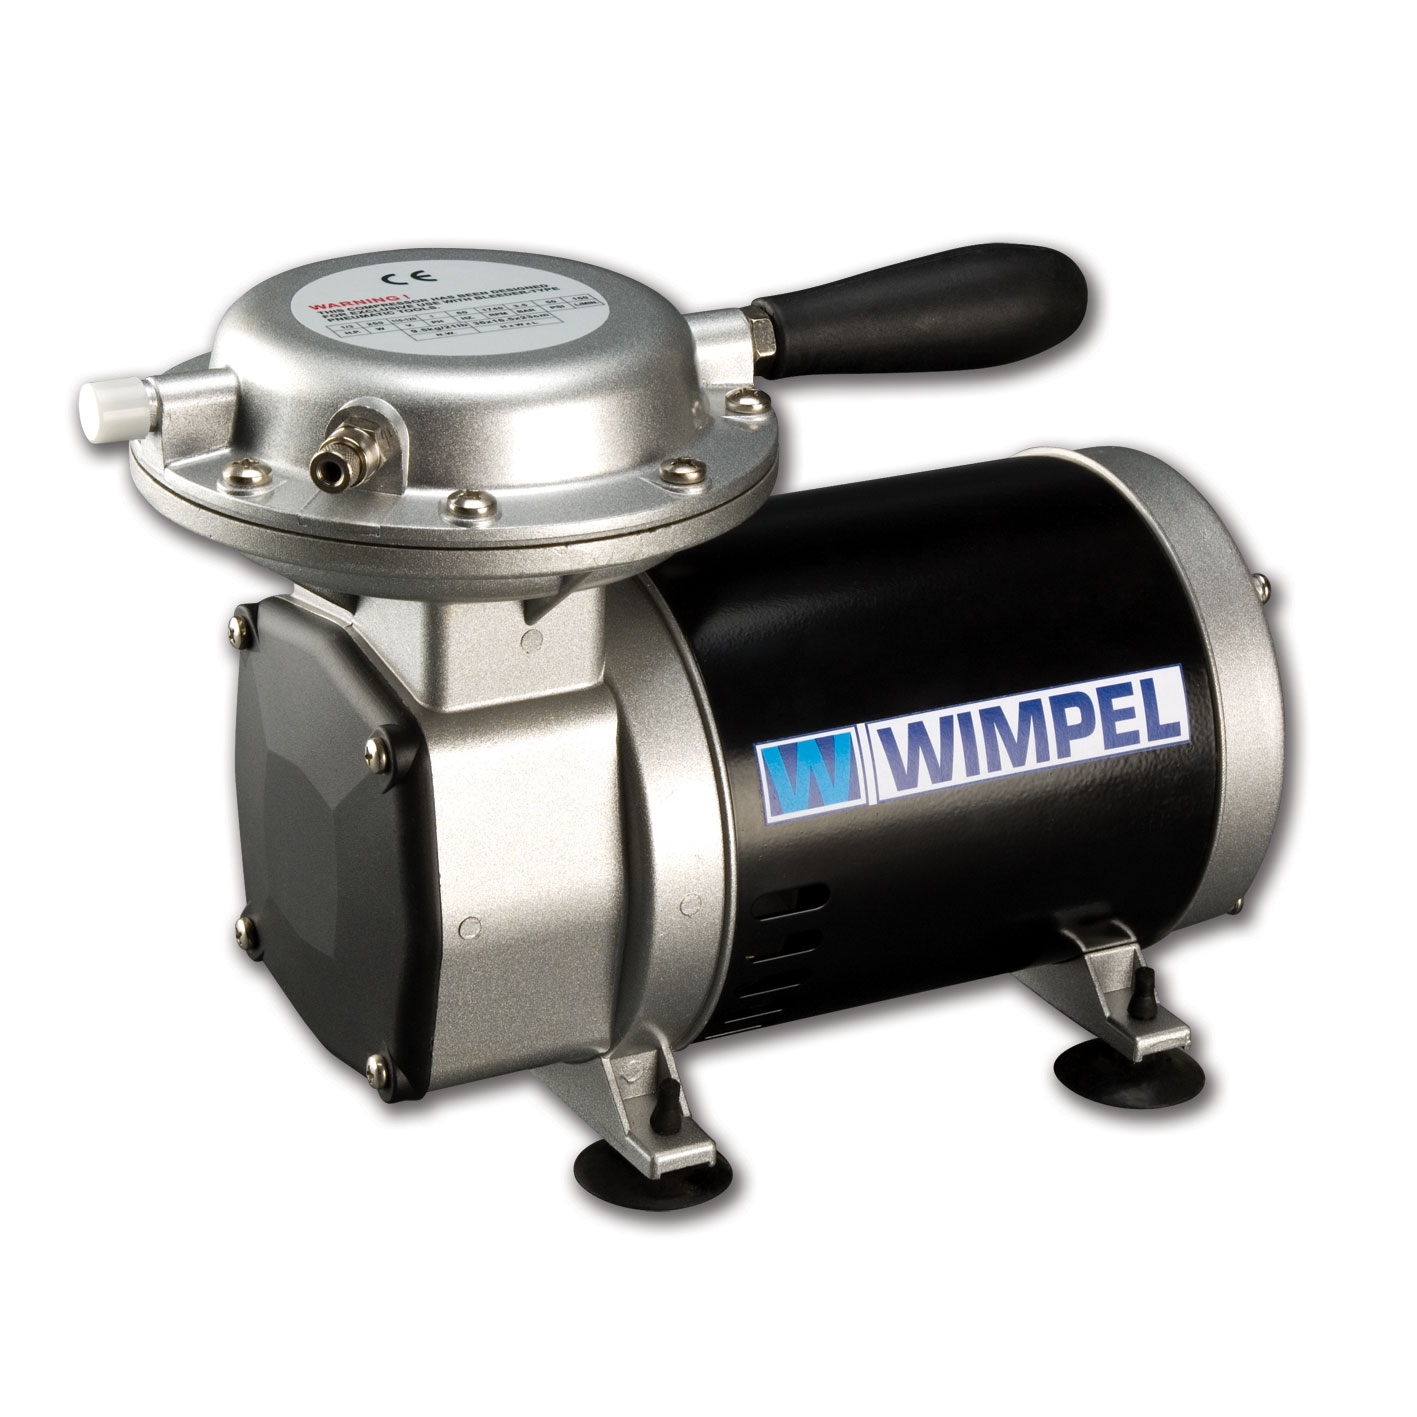 Compressor Wimpel Comp2 para Pistolas e Aerógrafos-Bivolt - melhor Tufãozinho do mercado - Aerografia